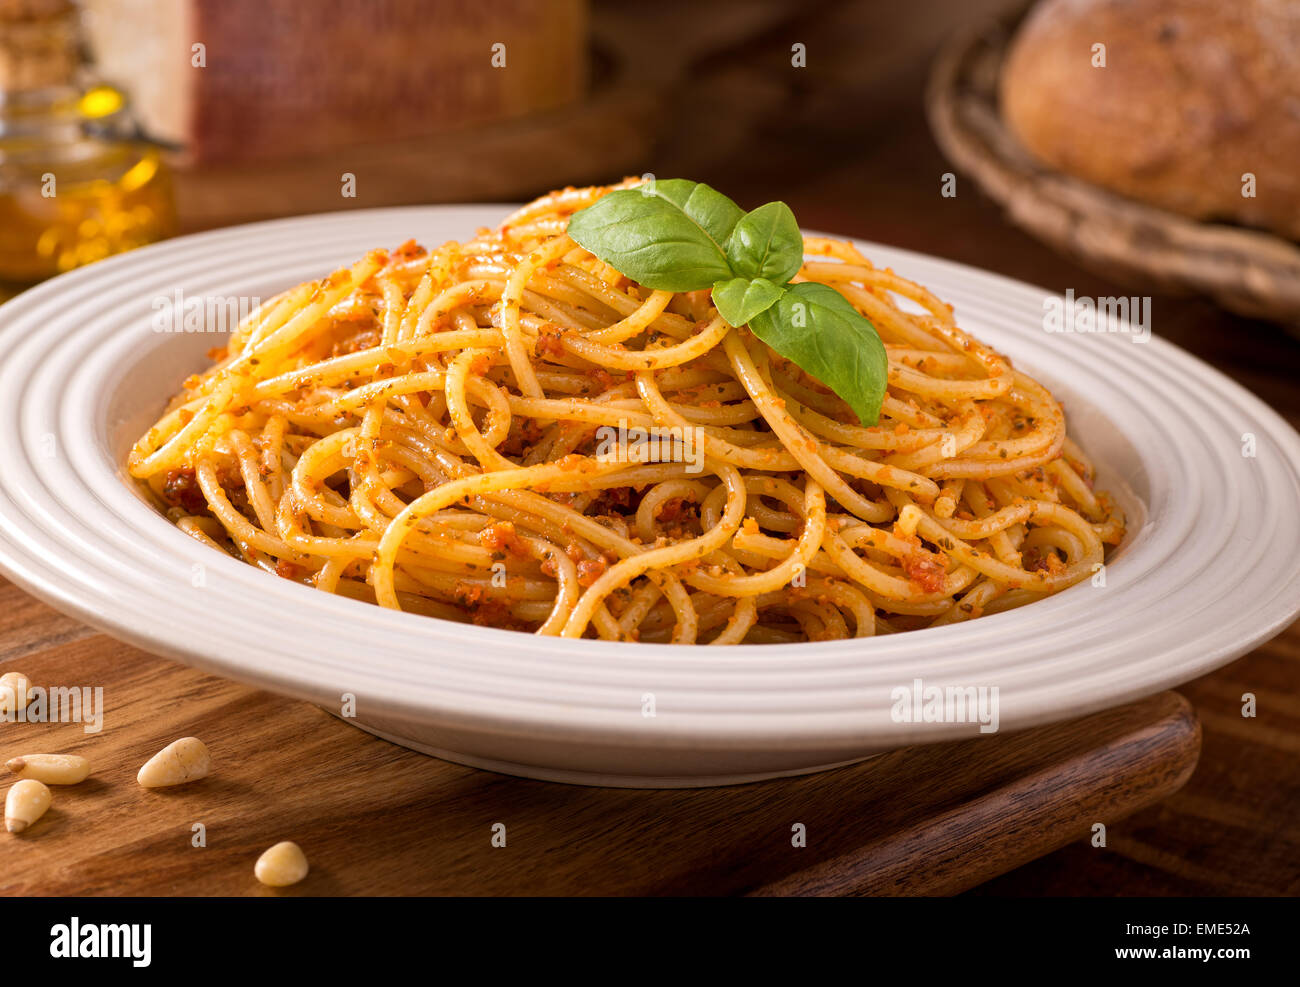 A delicious bowl of fresh spaghetti with sicilian red pesto. Stock Photo